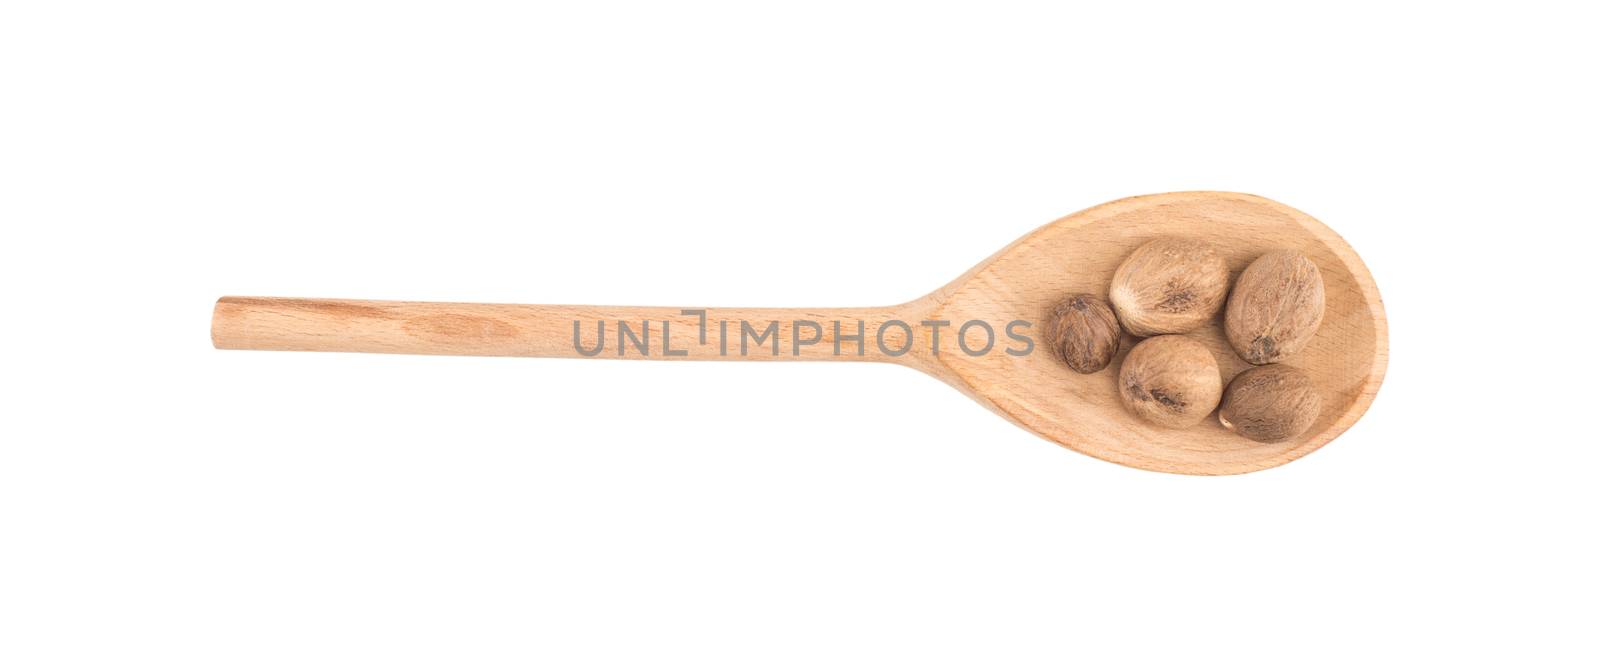 Nutmeg in wooden spoon by DGolbay